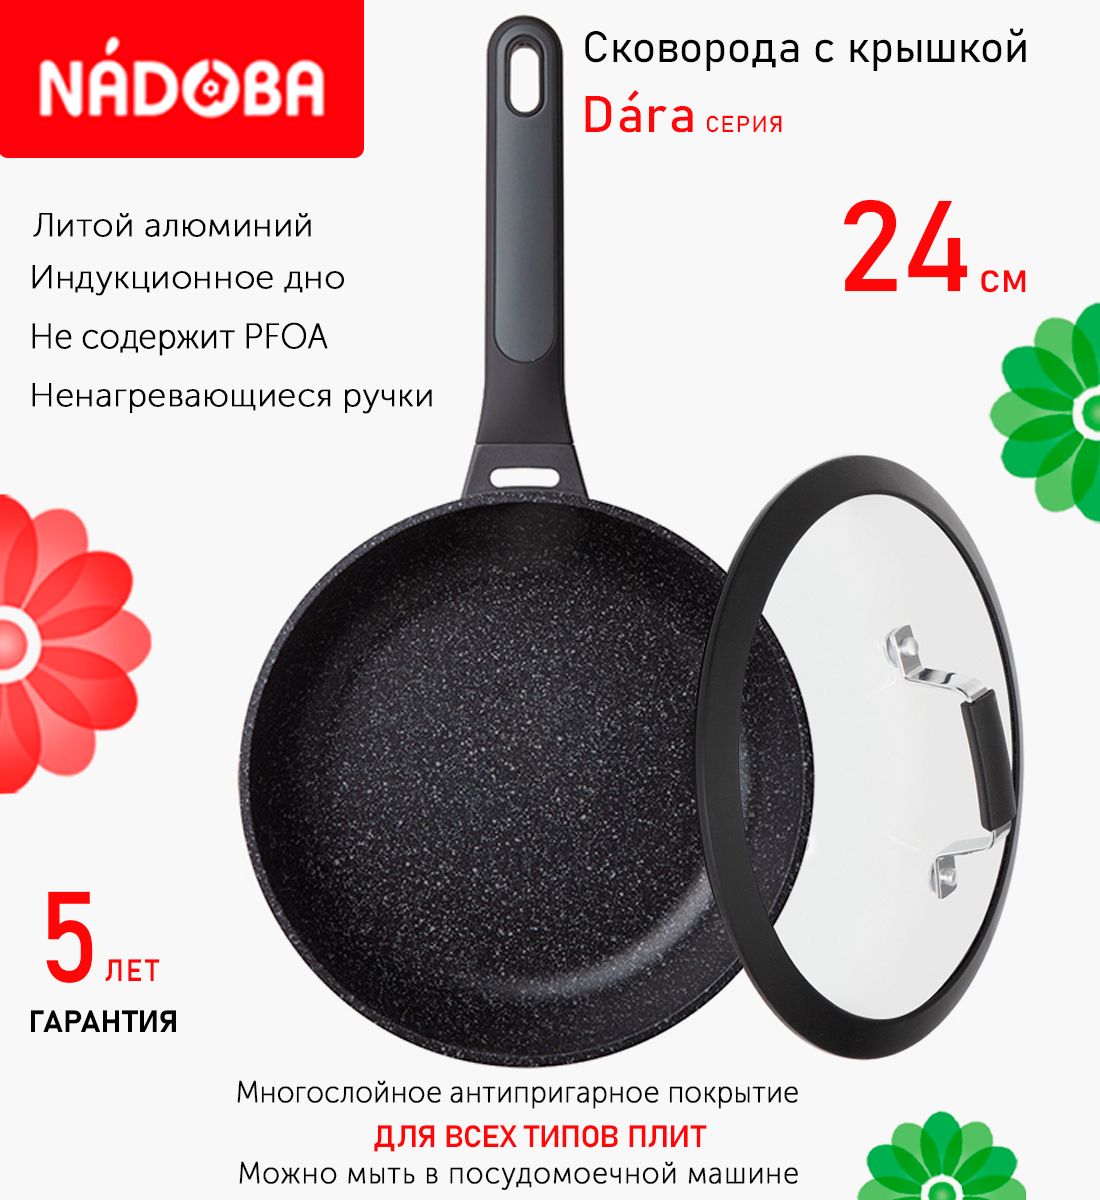 Сковорода с крышкой NADOBA 24 см серия Dara